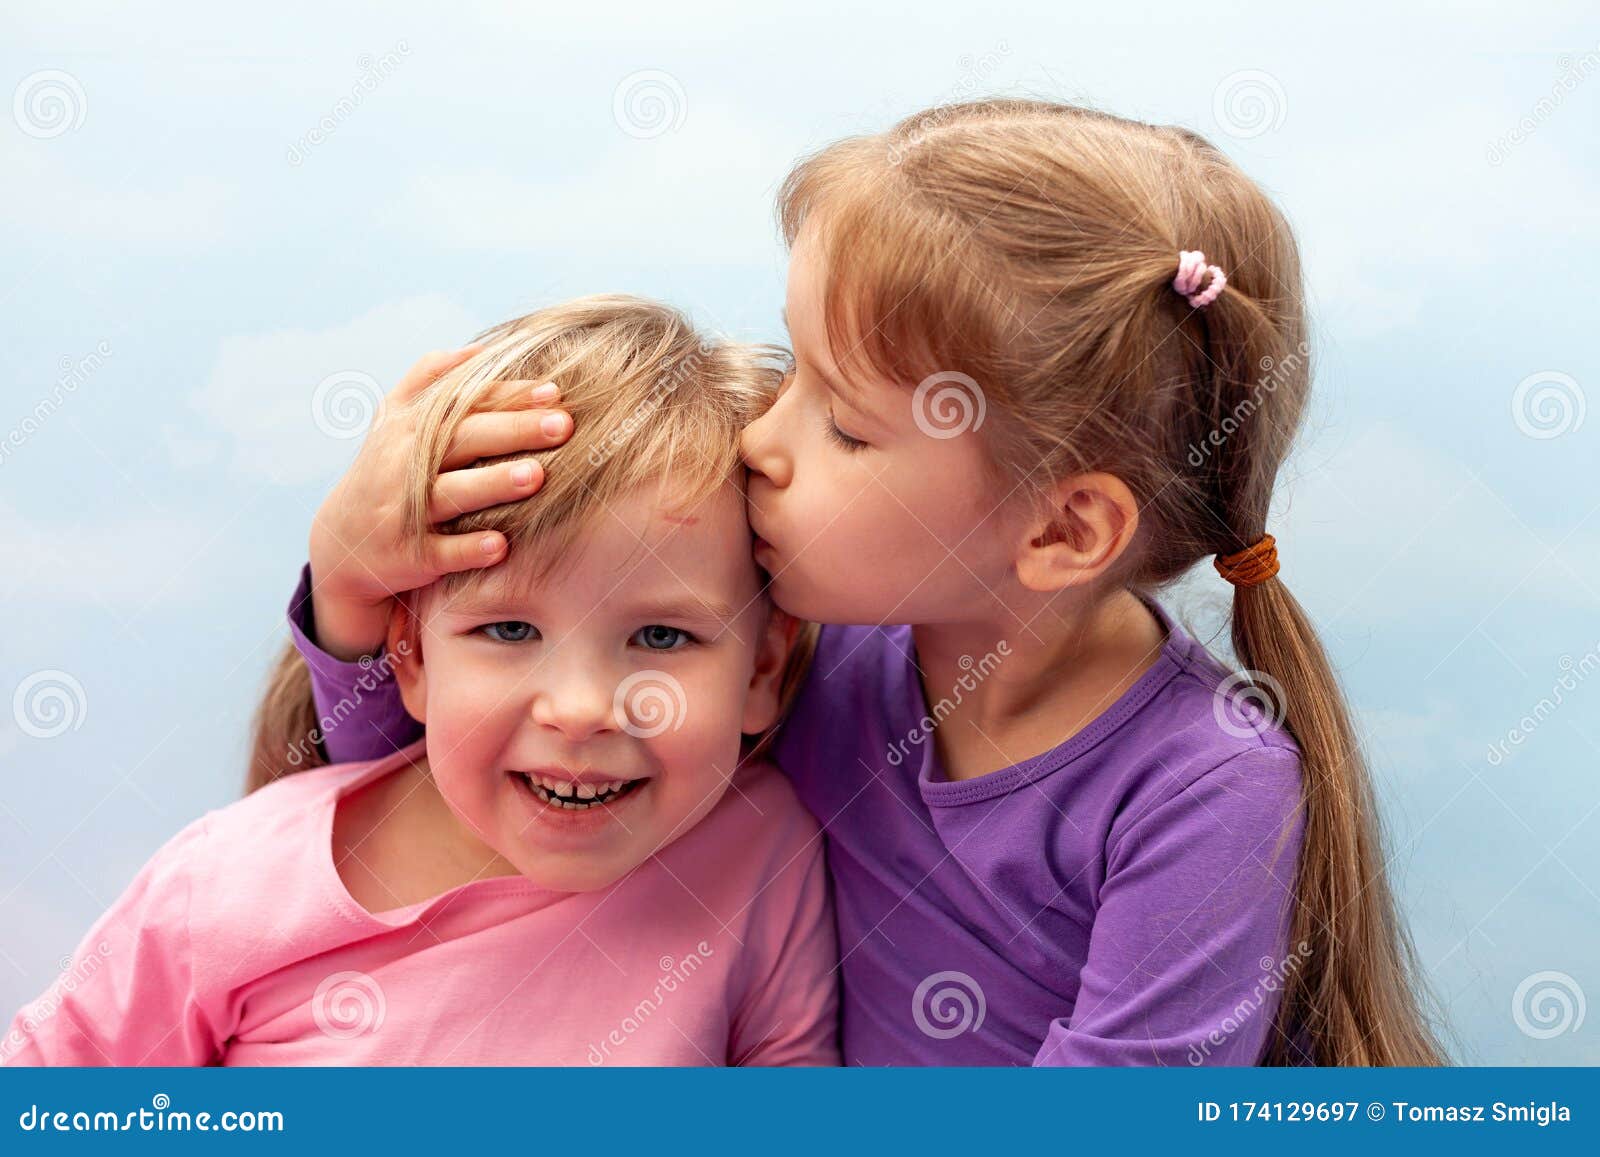 亚洲儿童亲吻 库存照片. 图片 包括有 可爱, 无辜, 婴孩, 女孩, 查找, 亲吻, 乐趣, 幼稚园, 中国 - 5989948